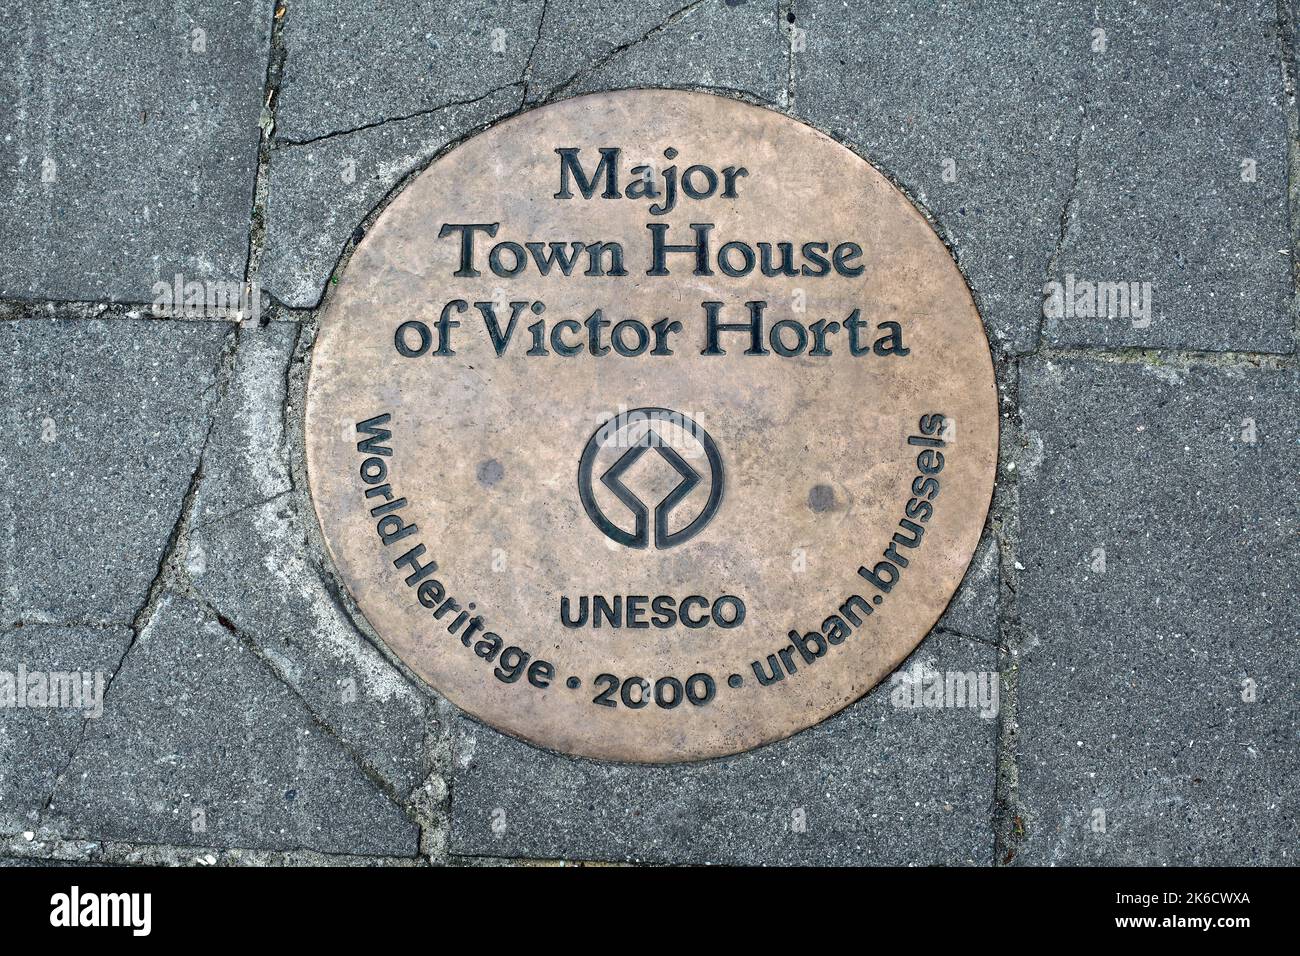 Ein Schild auf dem Bürgersteig vor dem Horta-Museum, Brüssel, dem Haus und Atelier des Architekten Victor Horta, das seinen UNESCO-Status als Weltkulturerbe anführt. Stockfoto